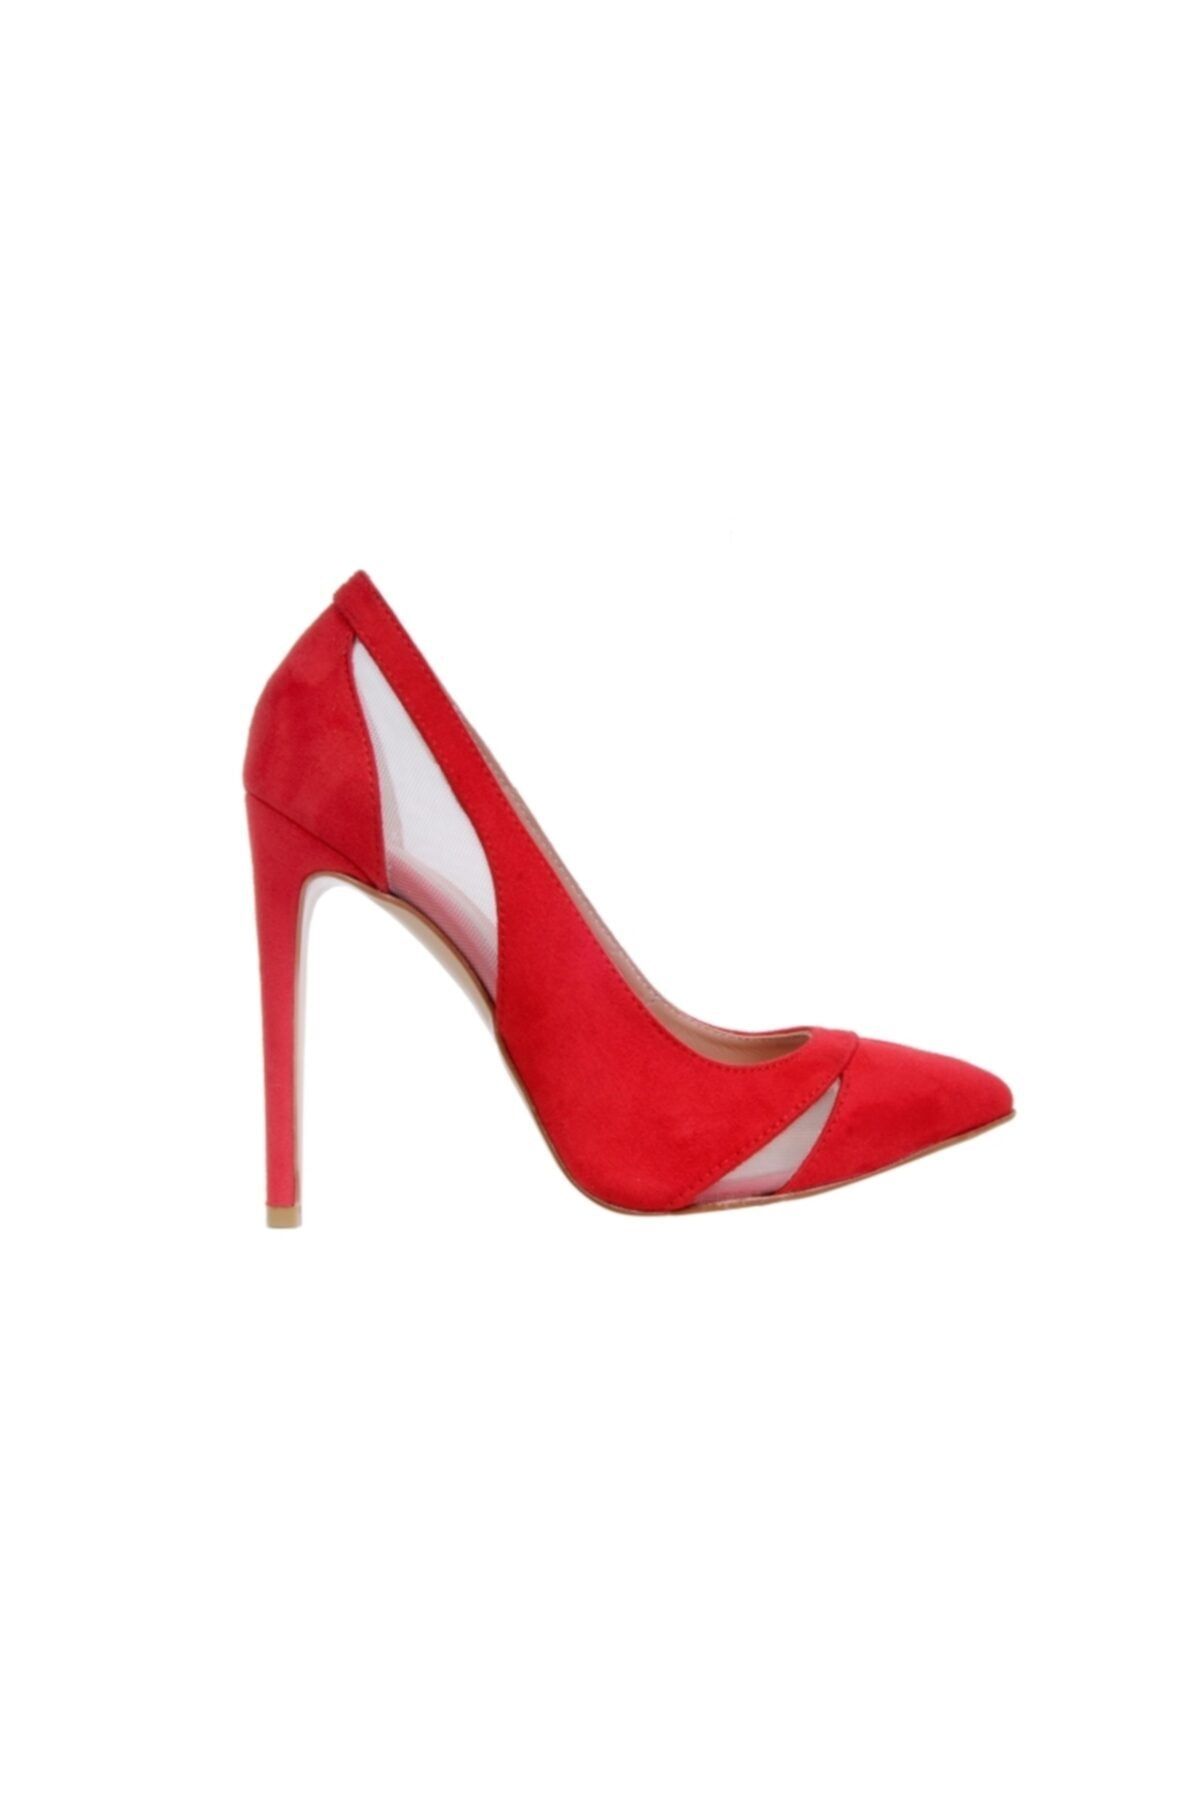 SVS SHOES ISTANBUL Kadın Kırmızı Süet Topuklu Ayakkabı